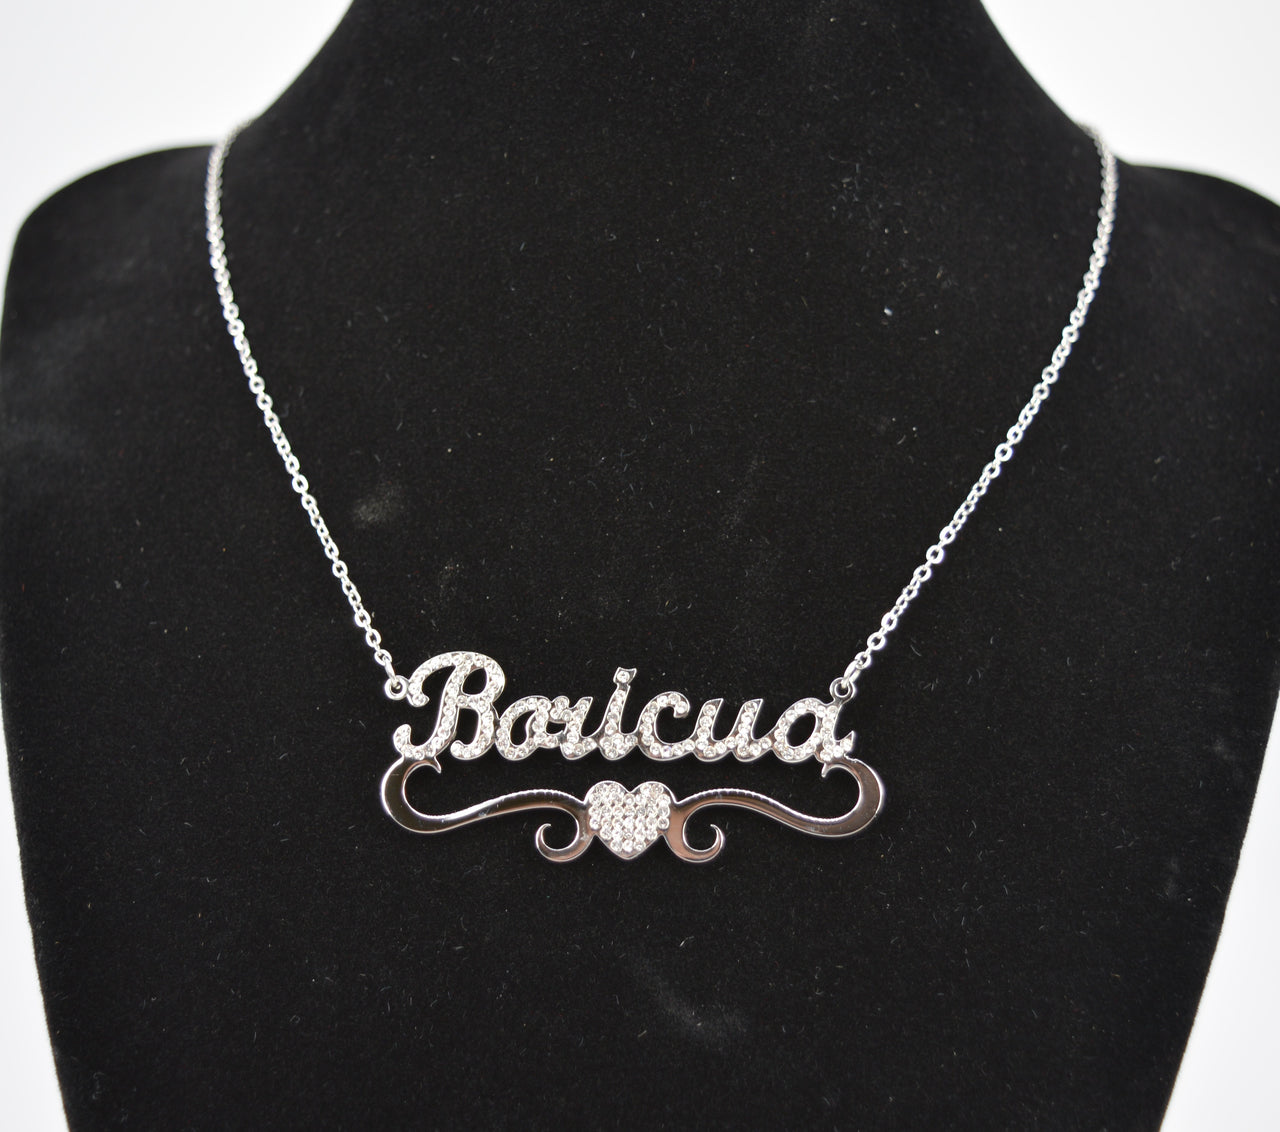 Boricua Necklace Studded 17.5"